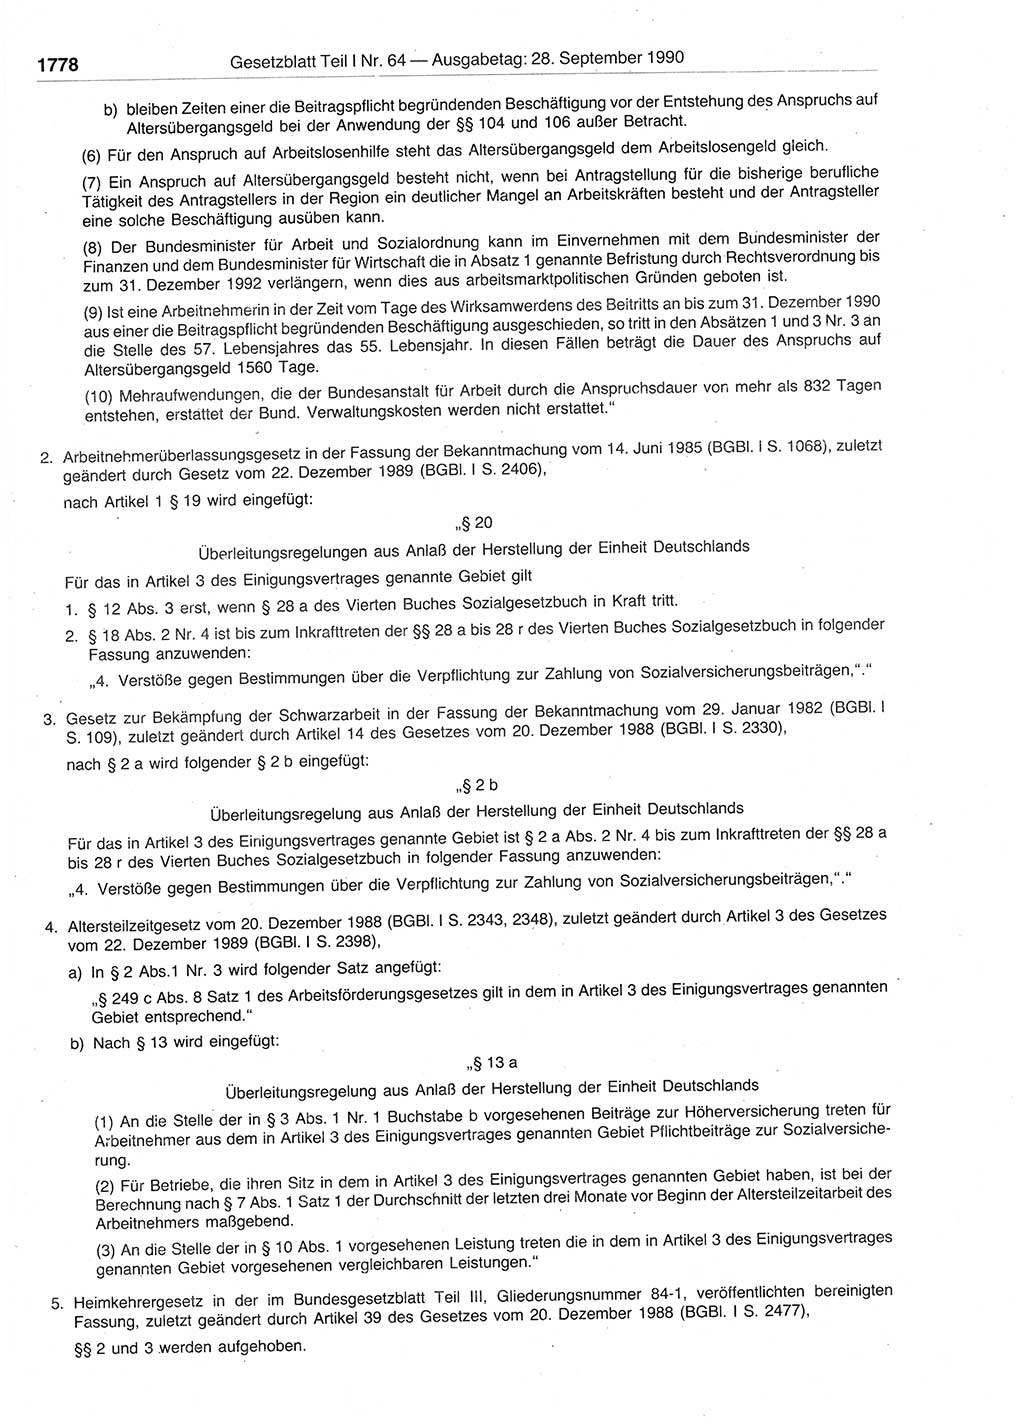 Gesetzblatt (GBl.) der Deutschen Demokratischen Republik (DDR) Teil Ⅰ 1990, Seite 1778 (GBl. DDR Ⅰ 1990, S. 1778)